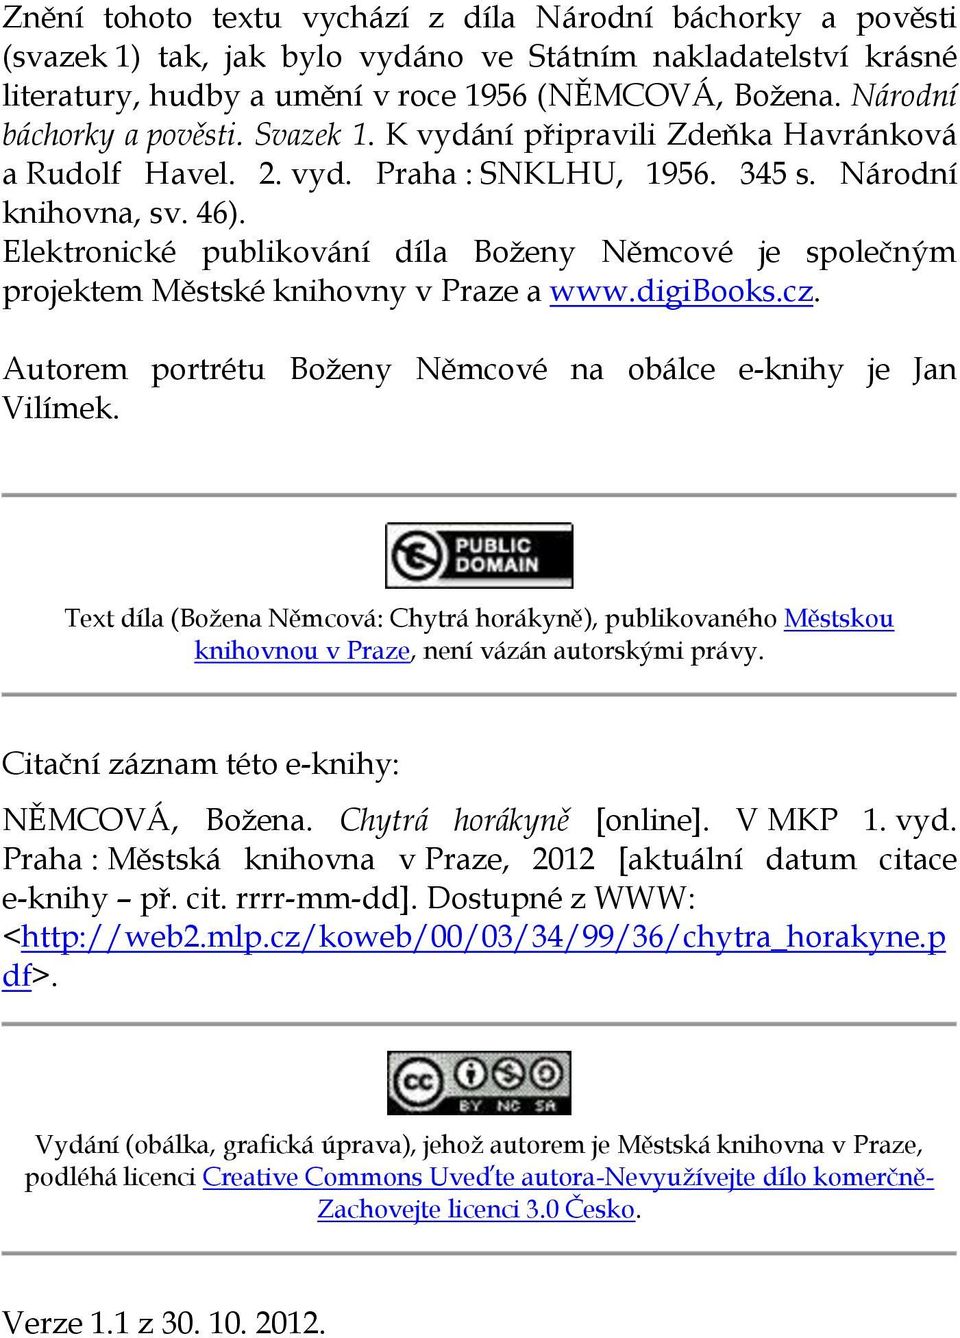 Elektronické publikování díla Boženy Němcové je společným projektem Městské knihovny v Praze a www.digibooks.cz. Autorem portrétu Boženy Němcové na obálce e-knihy je Jan Vilímek.